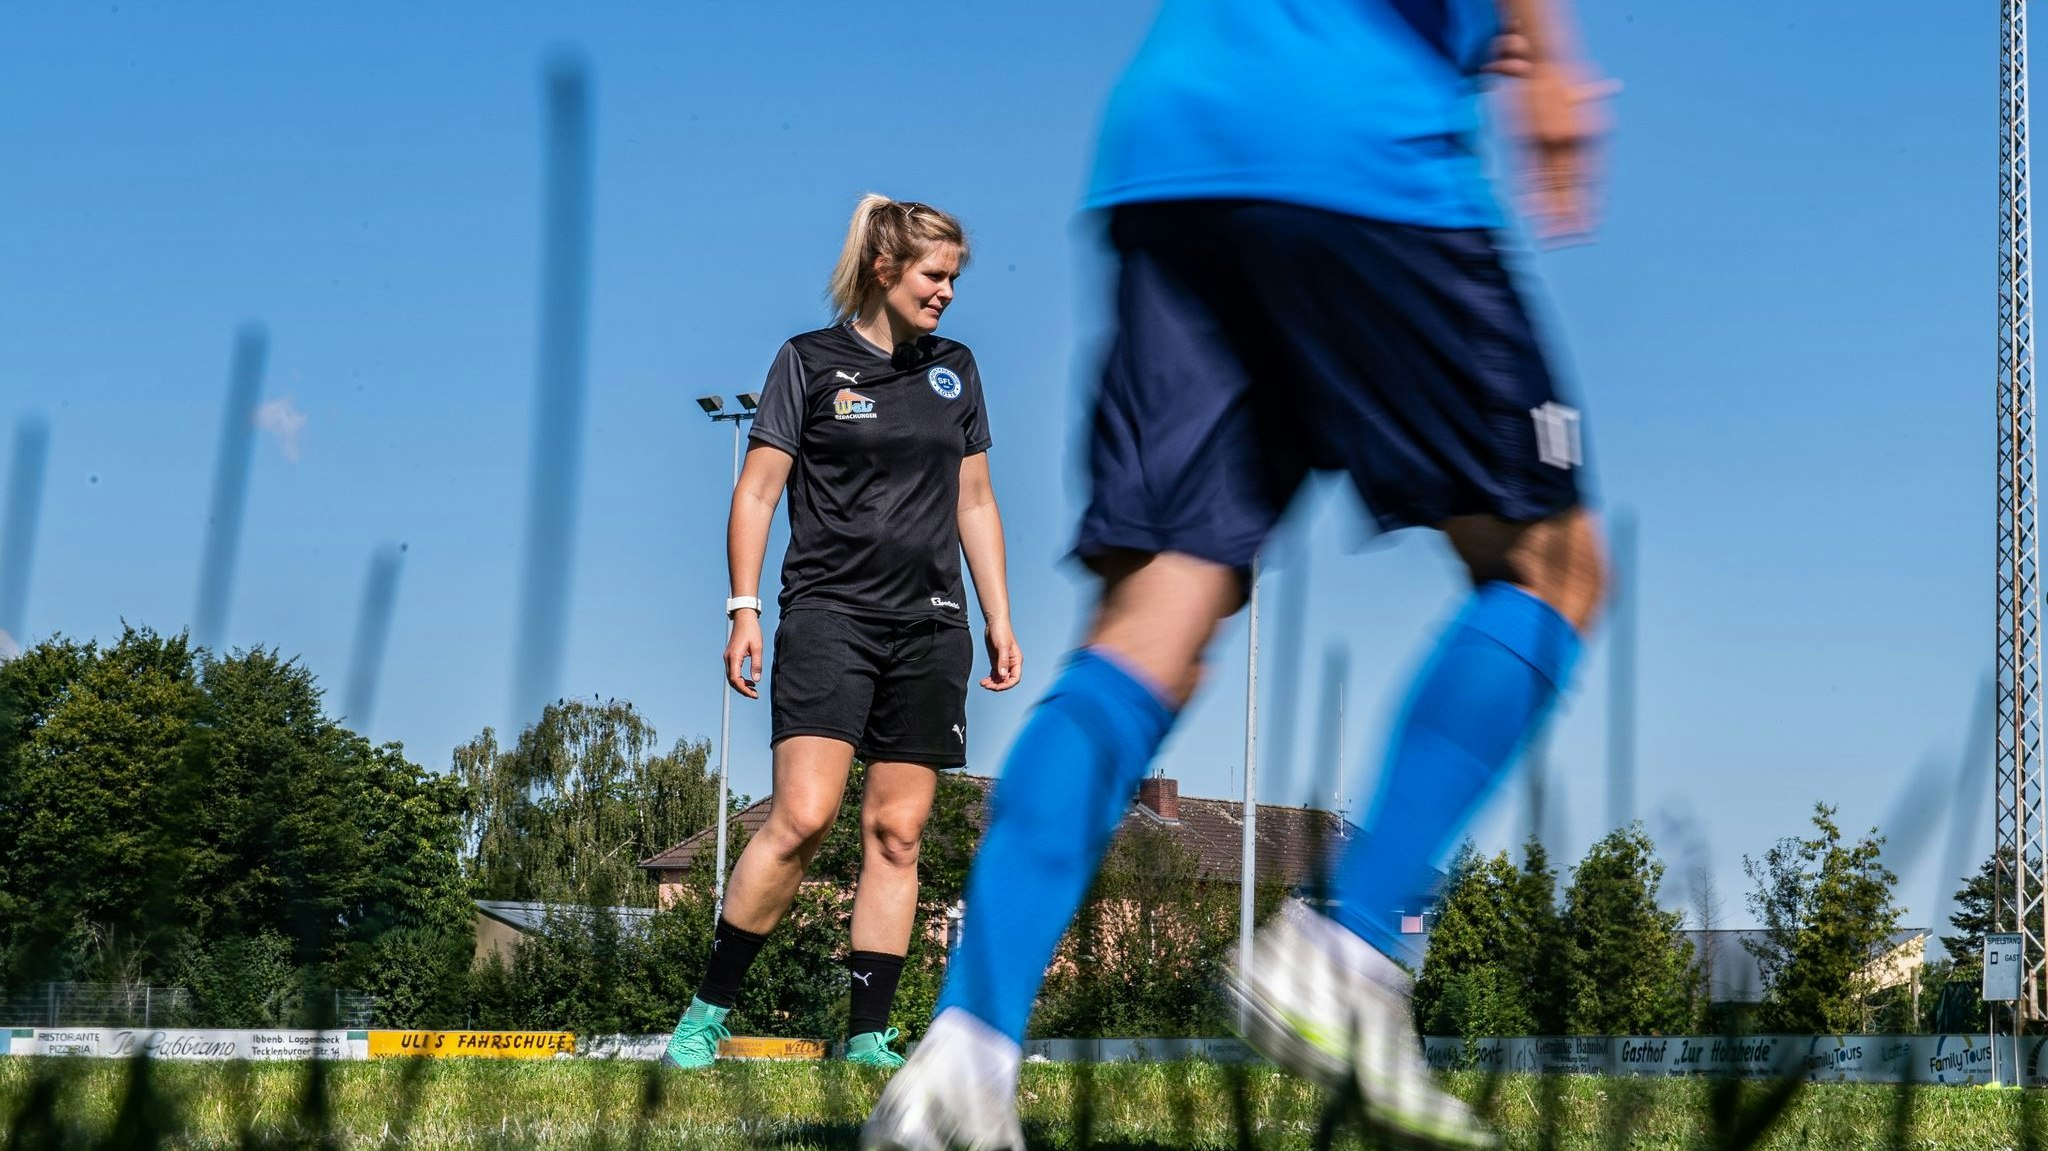 Imke Wübbenhorst wurde als Trainerin der Sportfreunde Lotte entlassen. Foto: dpa/Kirchner